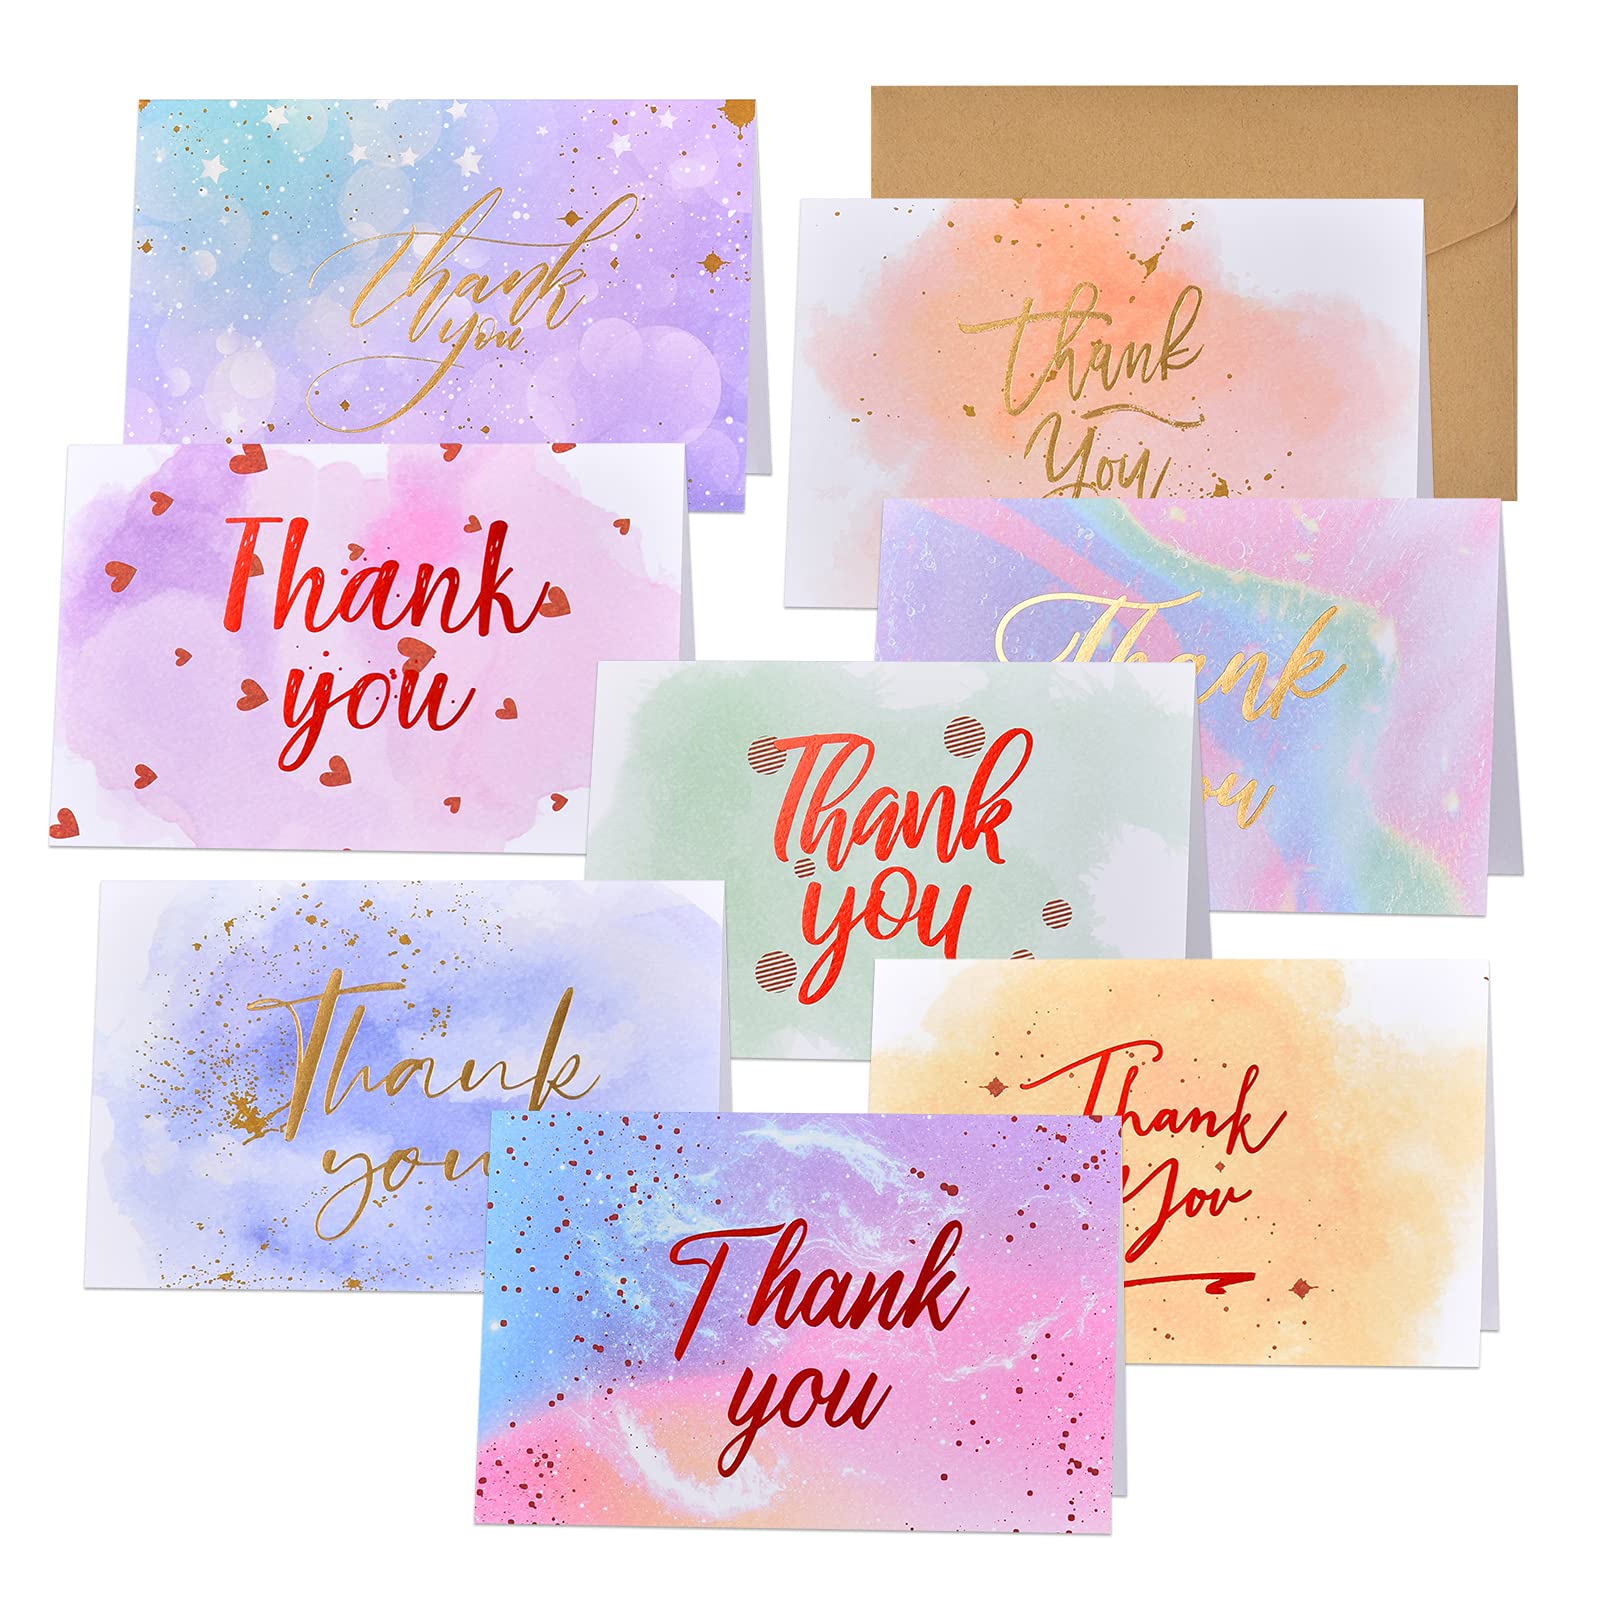 prix de gros Giiffu Lot de 48 cartes de remerciements aquarelles avec enveloppes pour mariage, Thanksgiving, entreprise, fête prénatale remerciement dmYzwbp9e en France Online